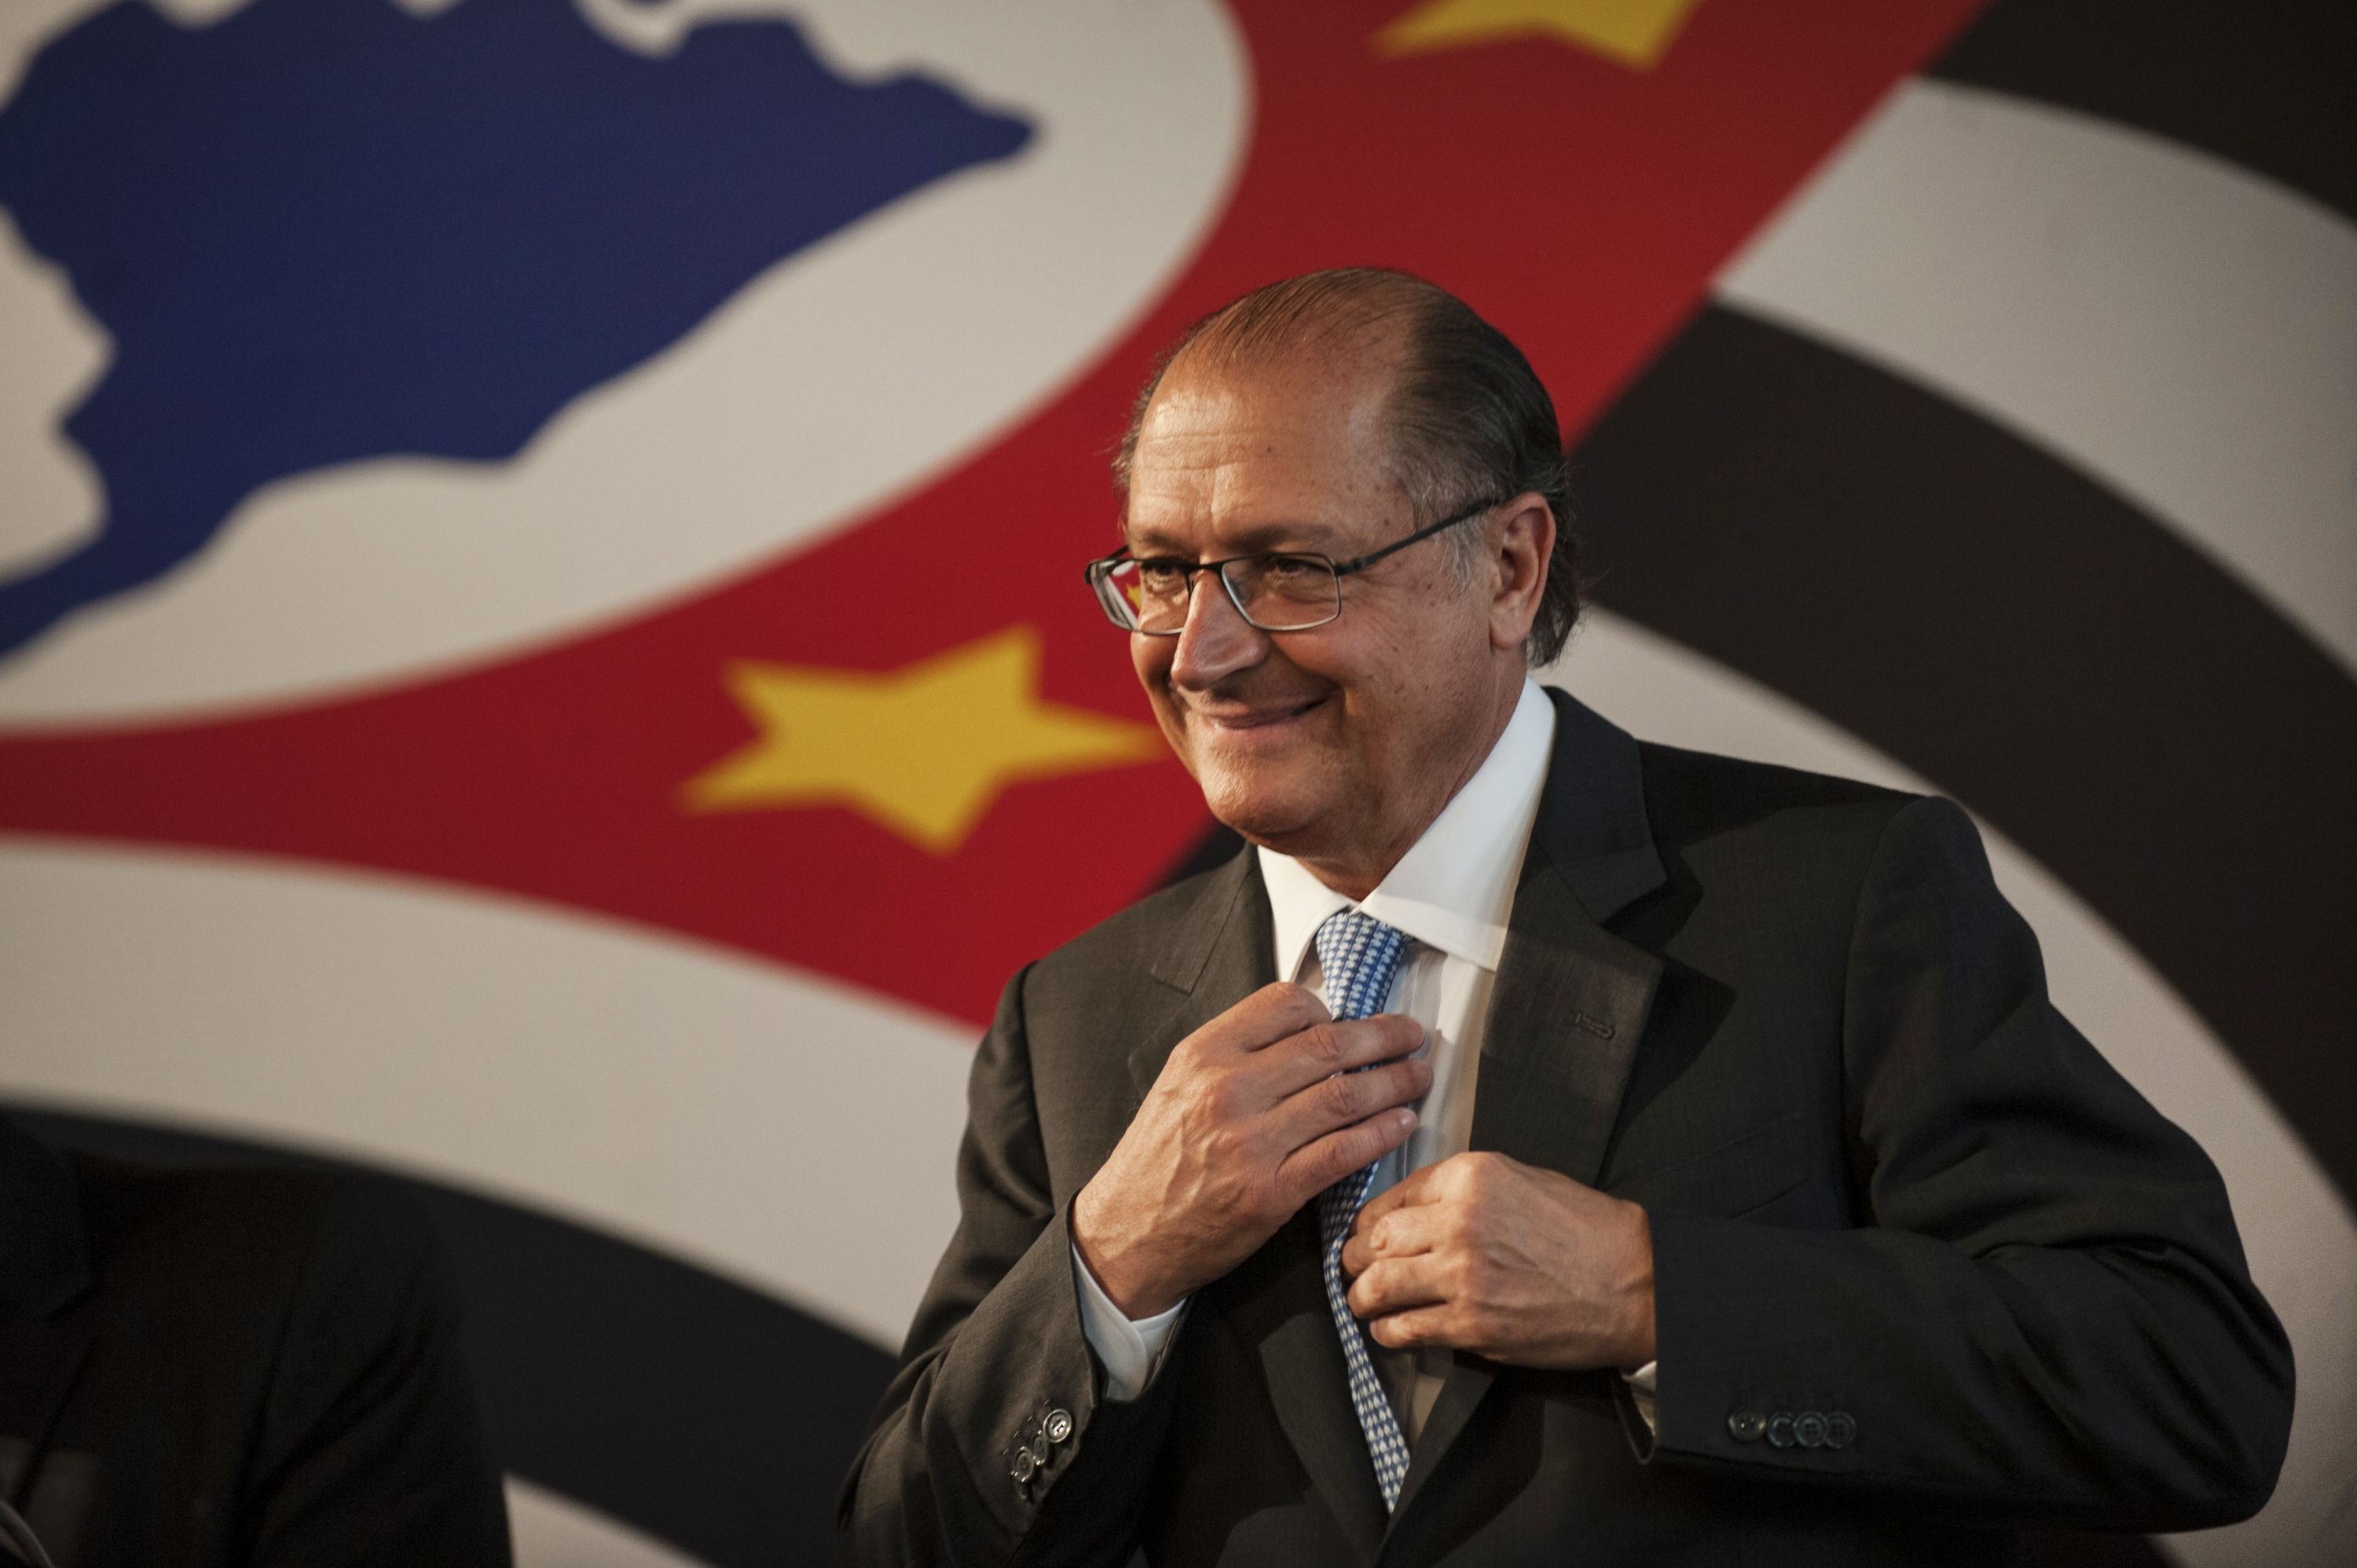 Governador de São Paulo, Geraldo Alckmin, estará em Franca nesta terça-feira, 29  (Foto: Jornal GGN)